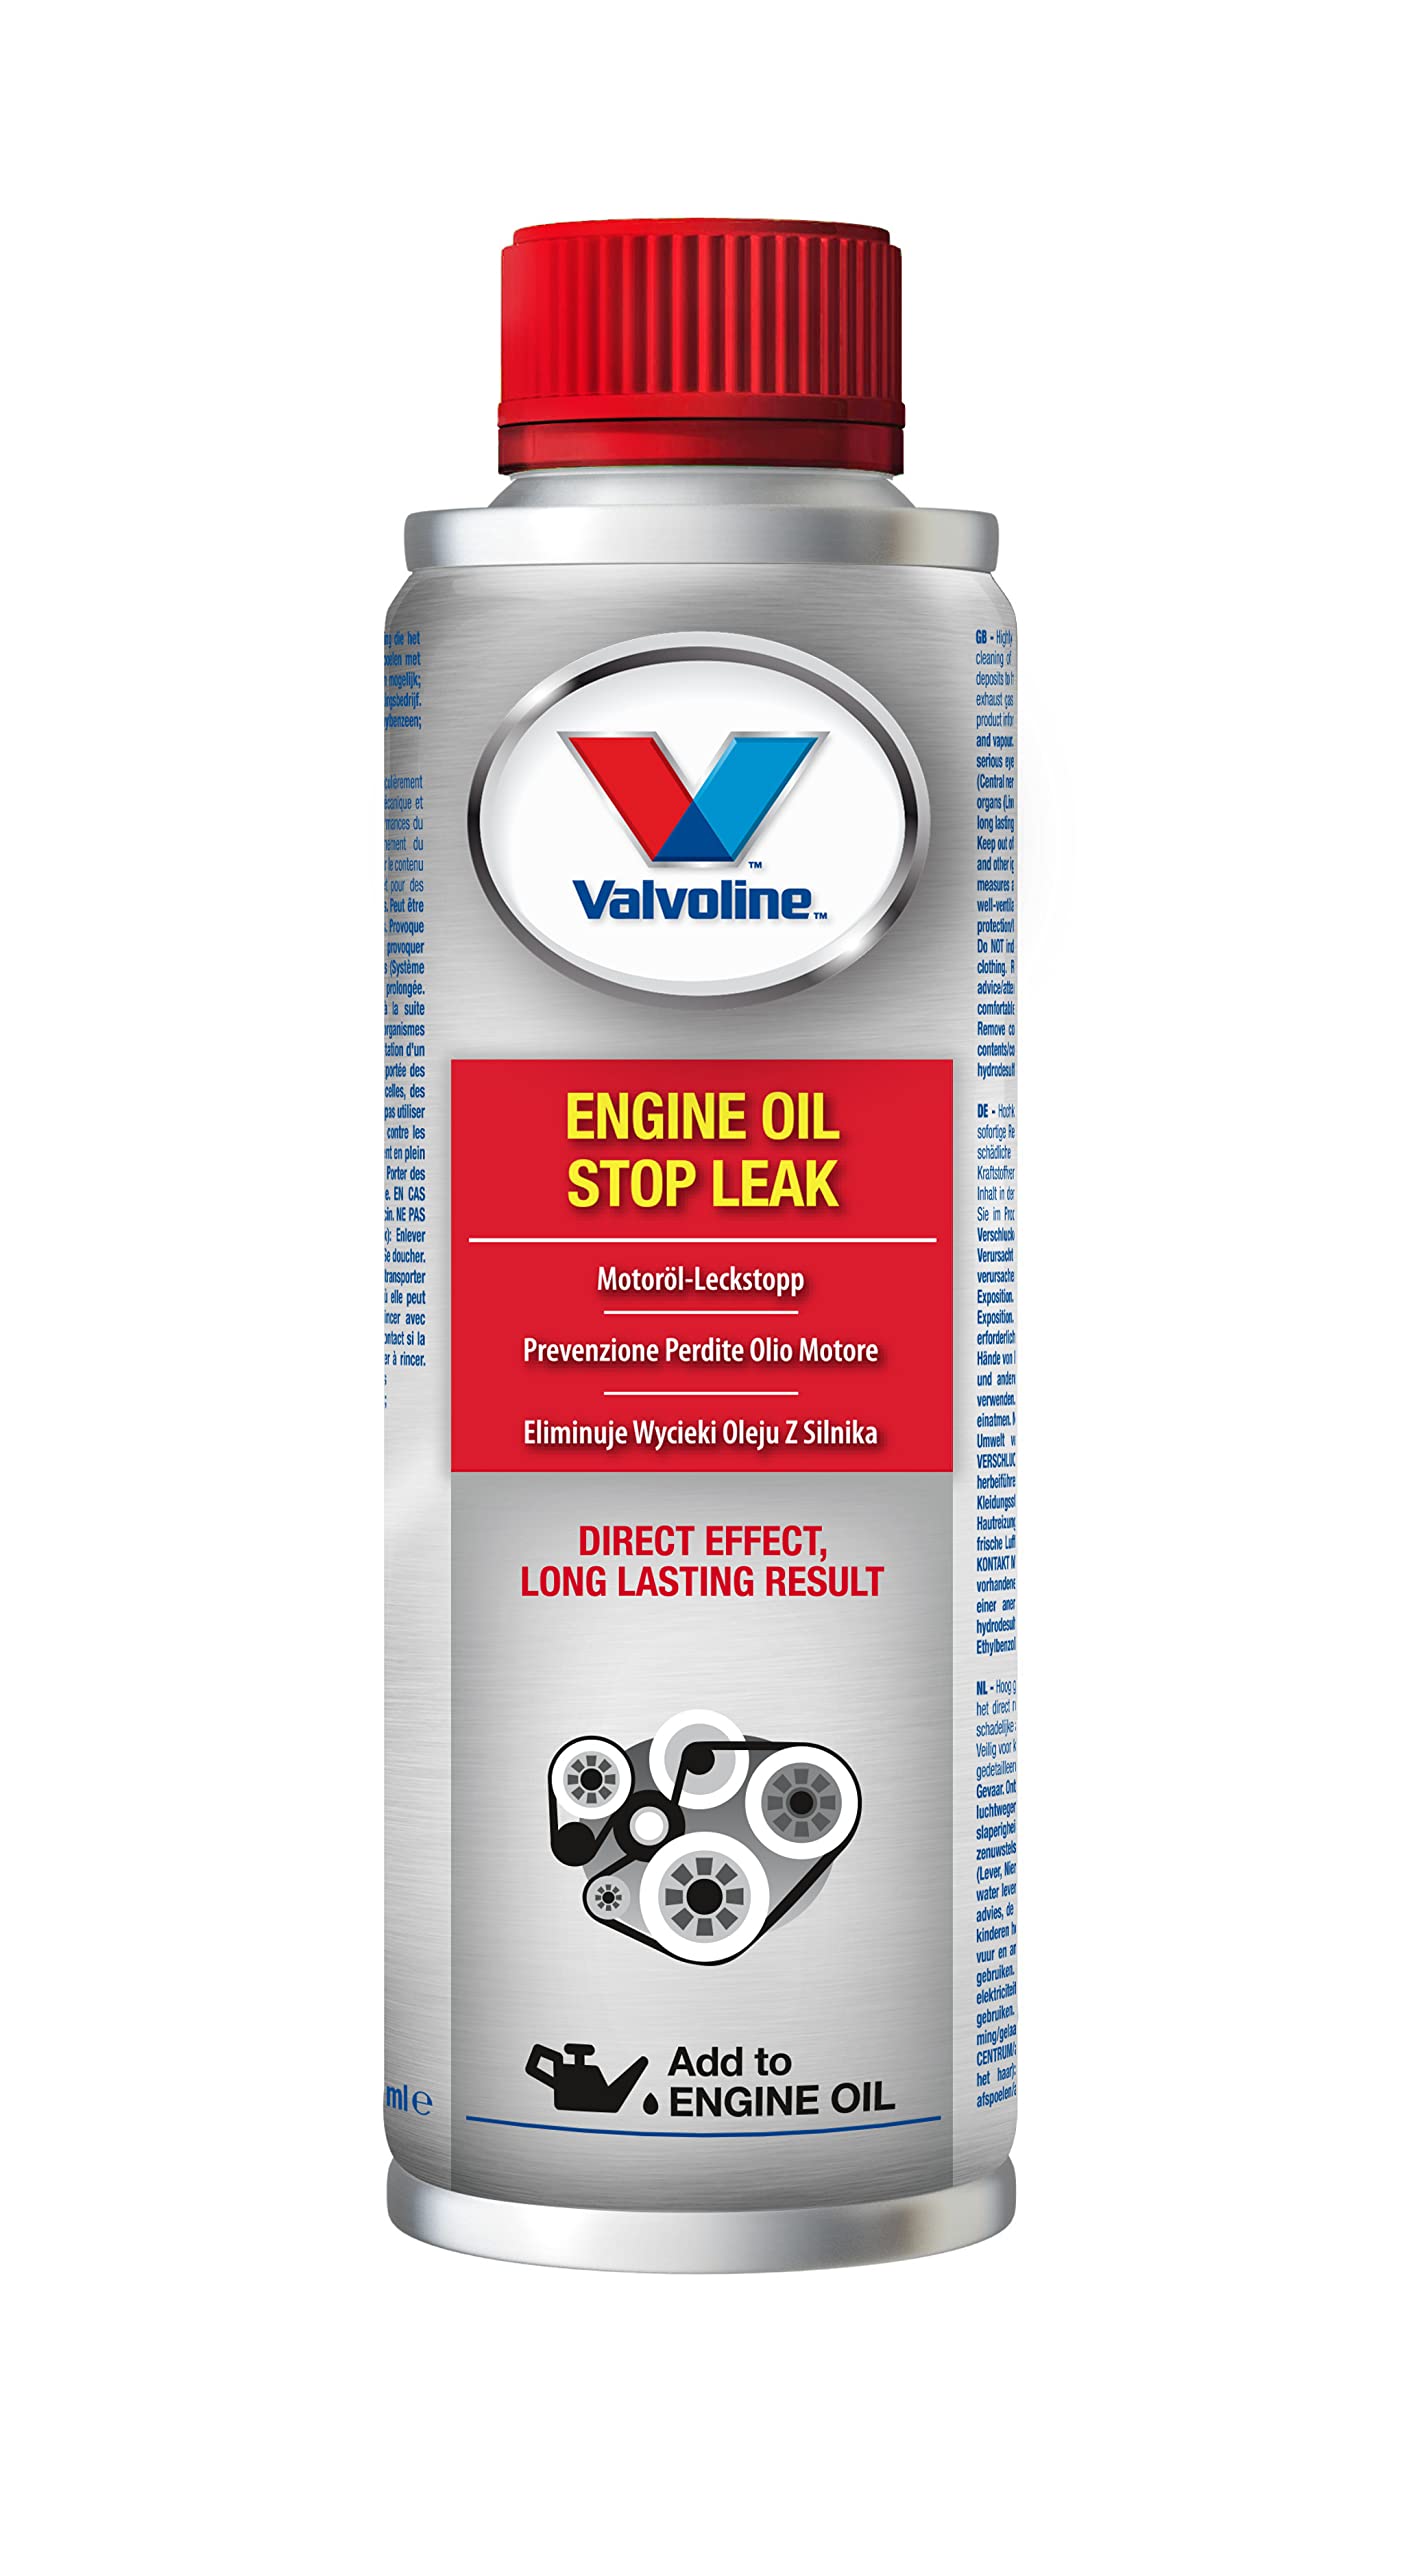 Valvoline 0,3 Liter Motoröl-Leckstopp Engine Oil Stop Leak | Zuverlässige Abdichtung von Motoröllecks von Valvoline